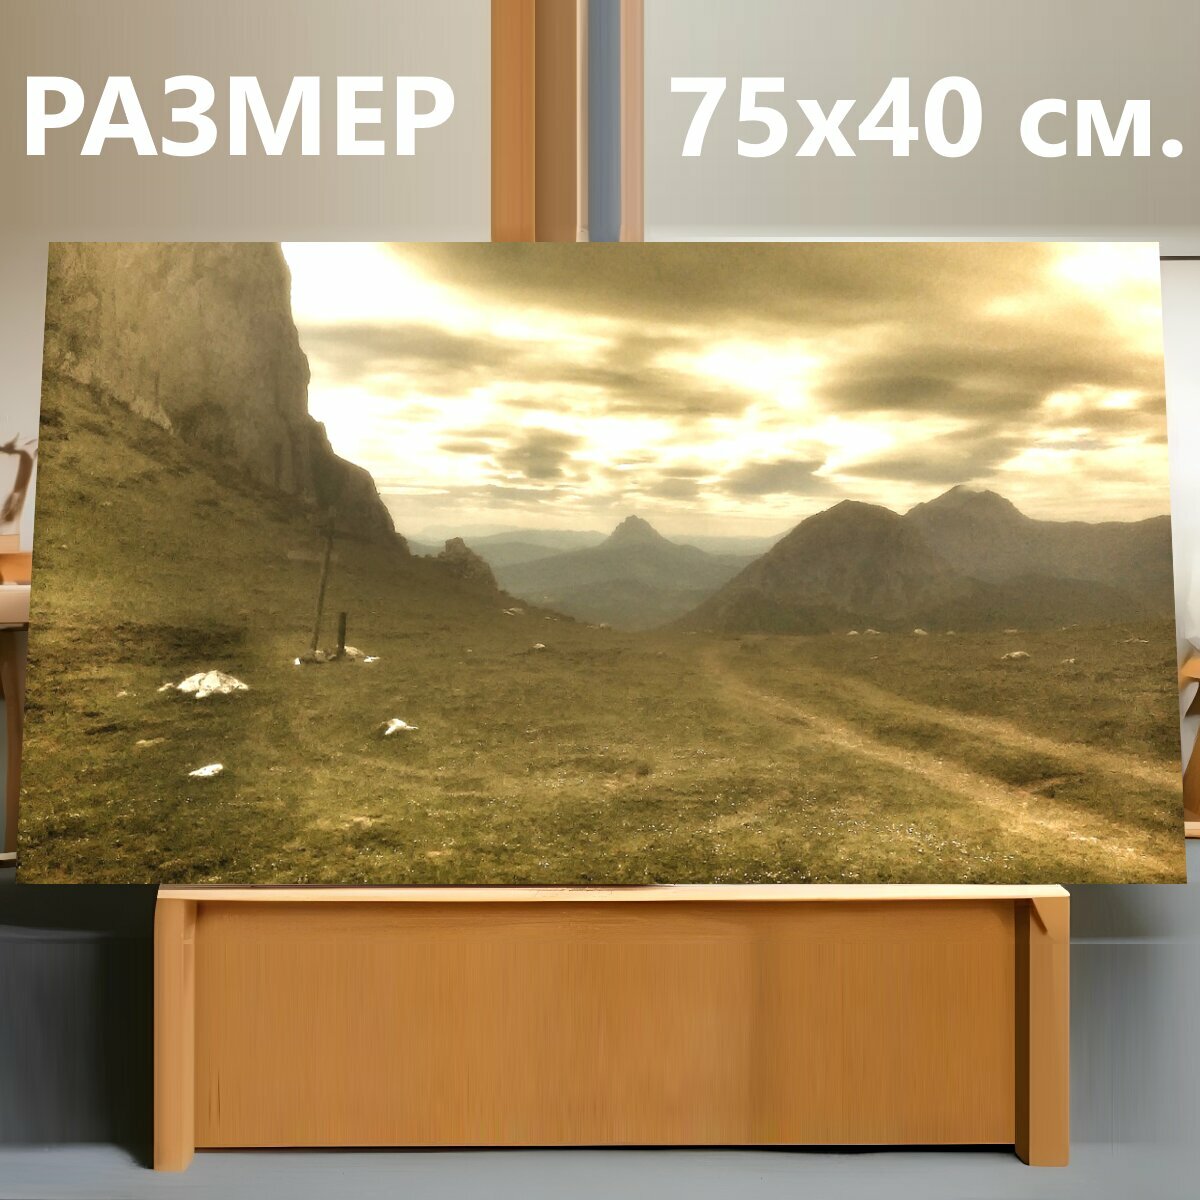 Картина на холсте "Гора, пейзаж, горный пейзаж" на подрамнике 75х40 см. для интерьера